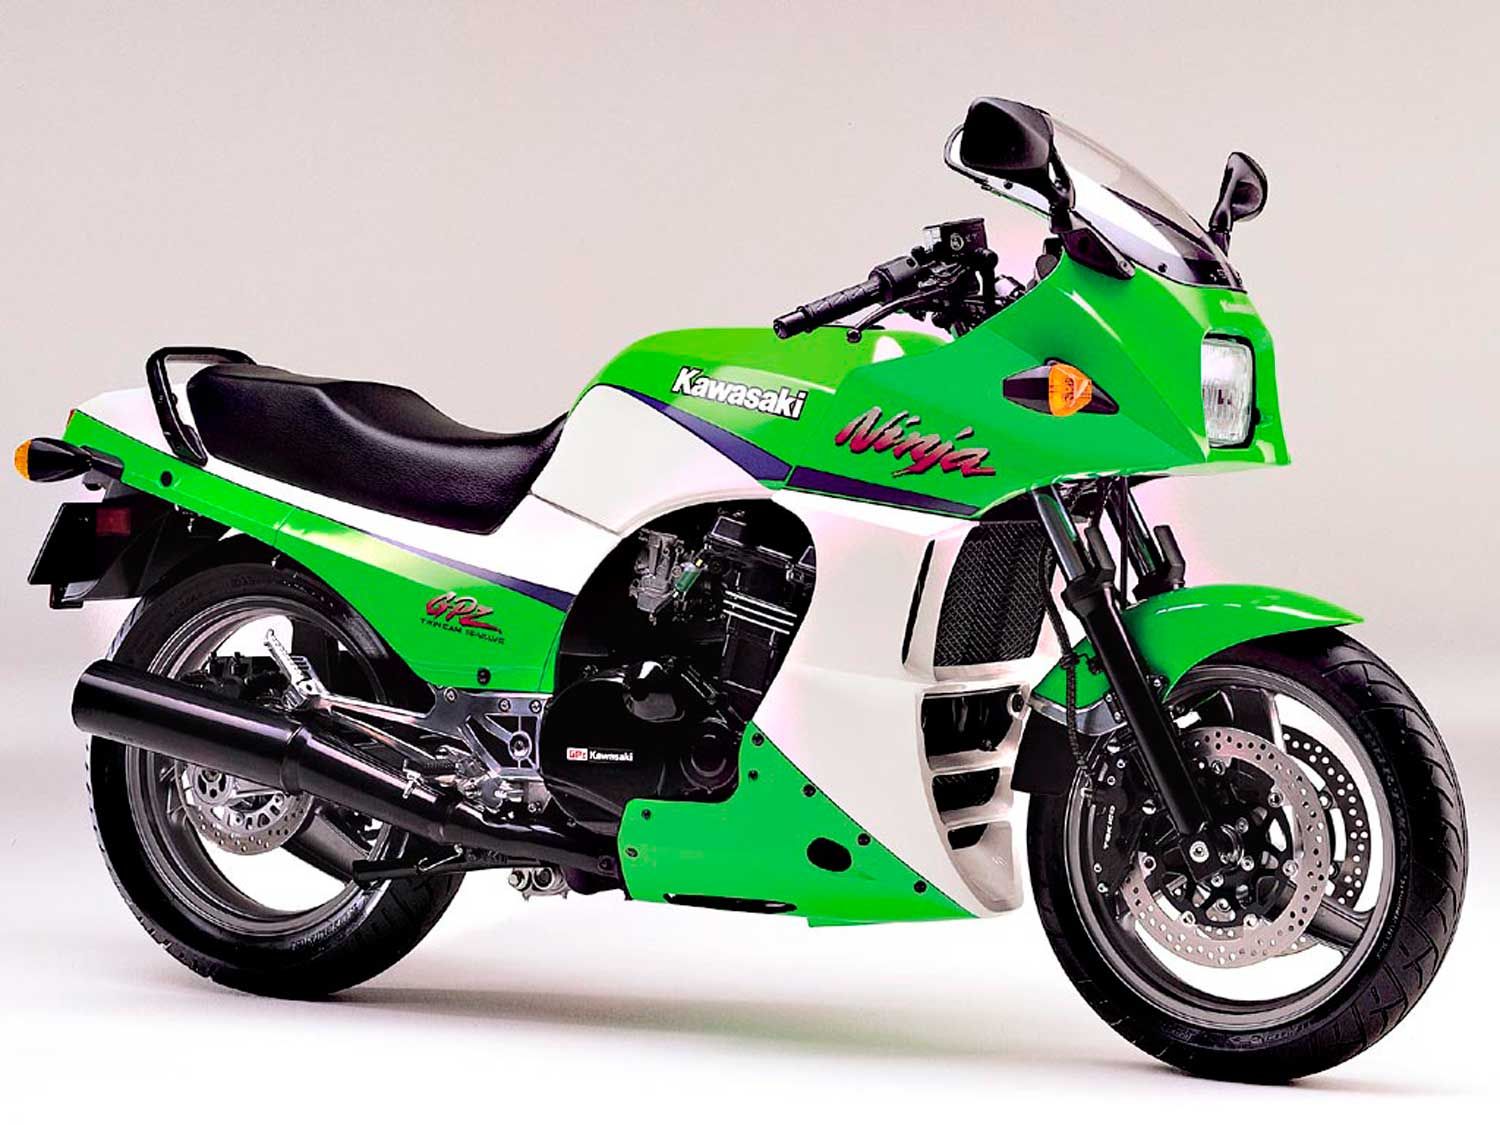 Kawasaki GPz900 in green